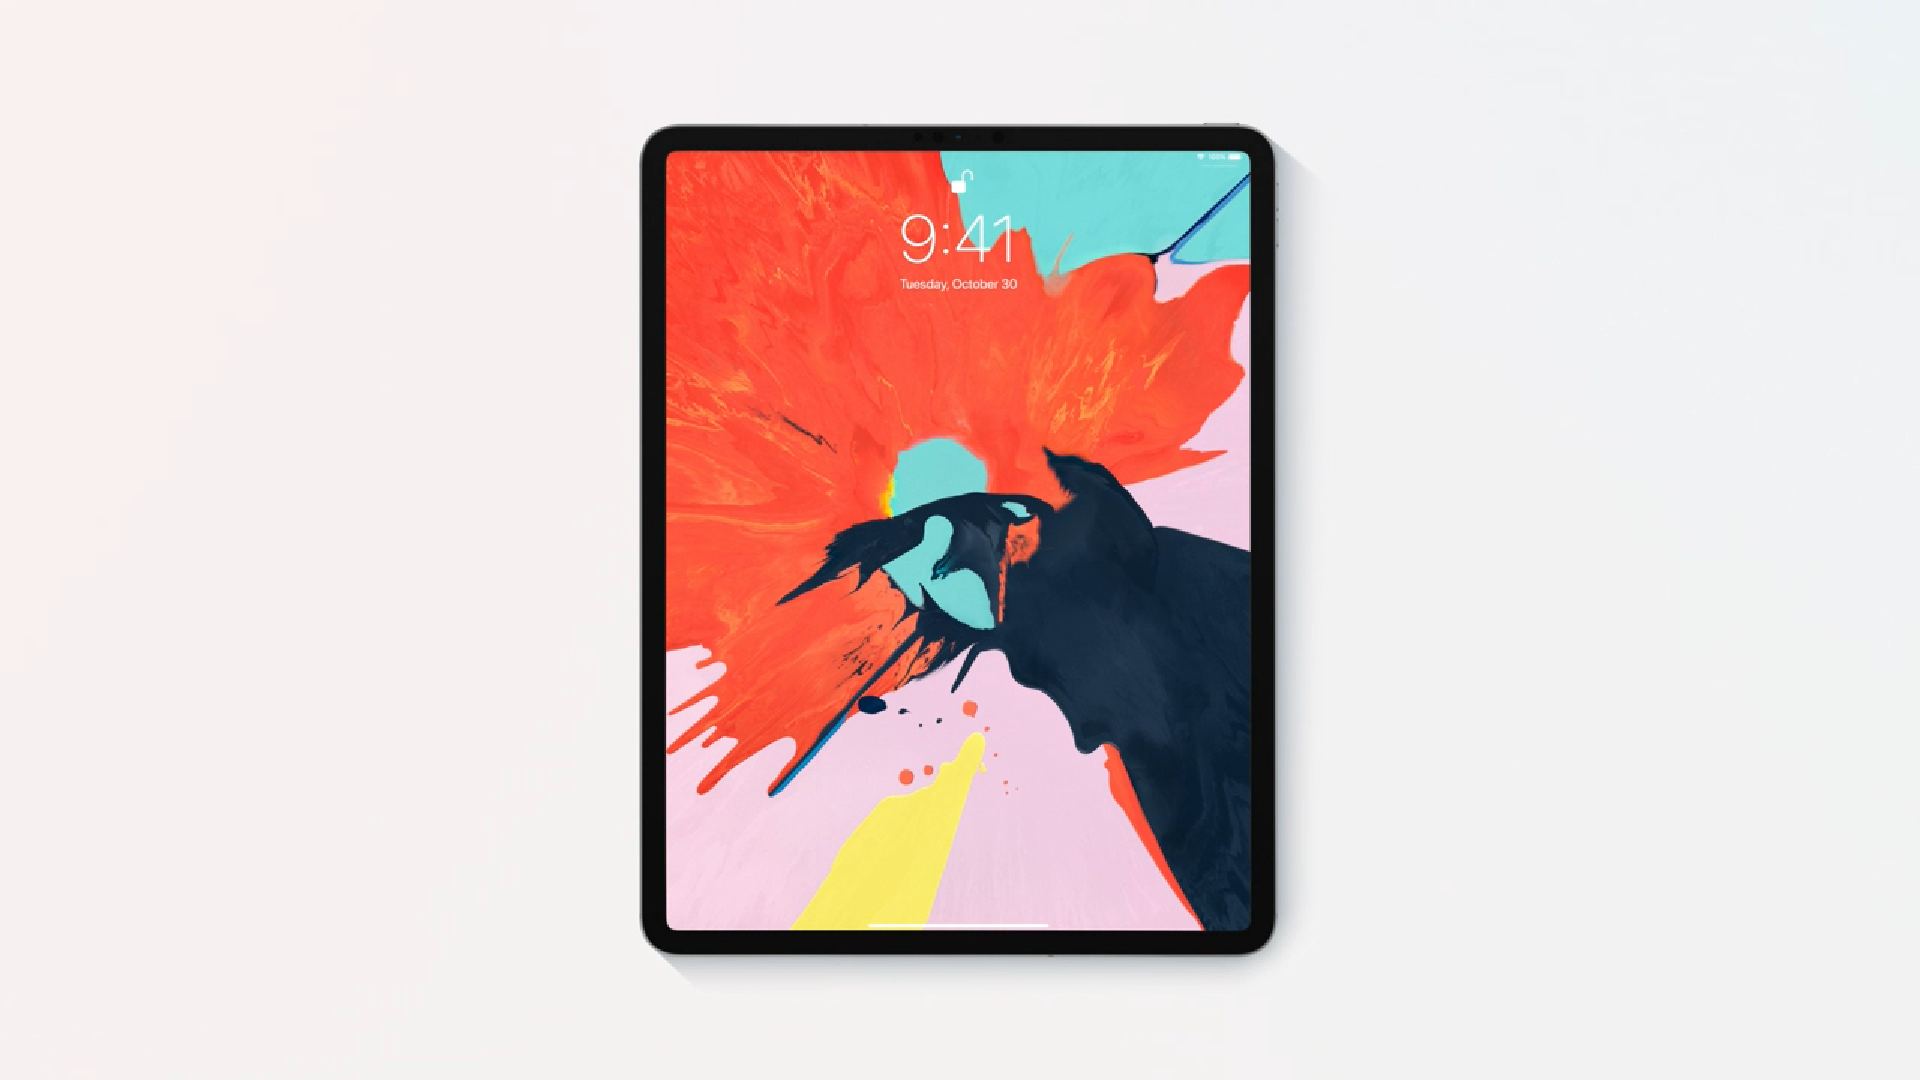 เปิดตัวแล้ว iPad Pro (2018) : สุดขีดพลังสร้างสรรค์, ชิป A12X Bionic, จอเต็ม, Face ID พร้อม Apple Pencil ใหม่